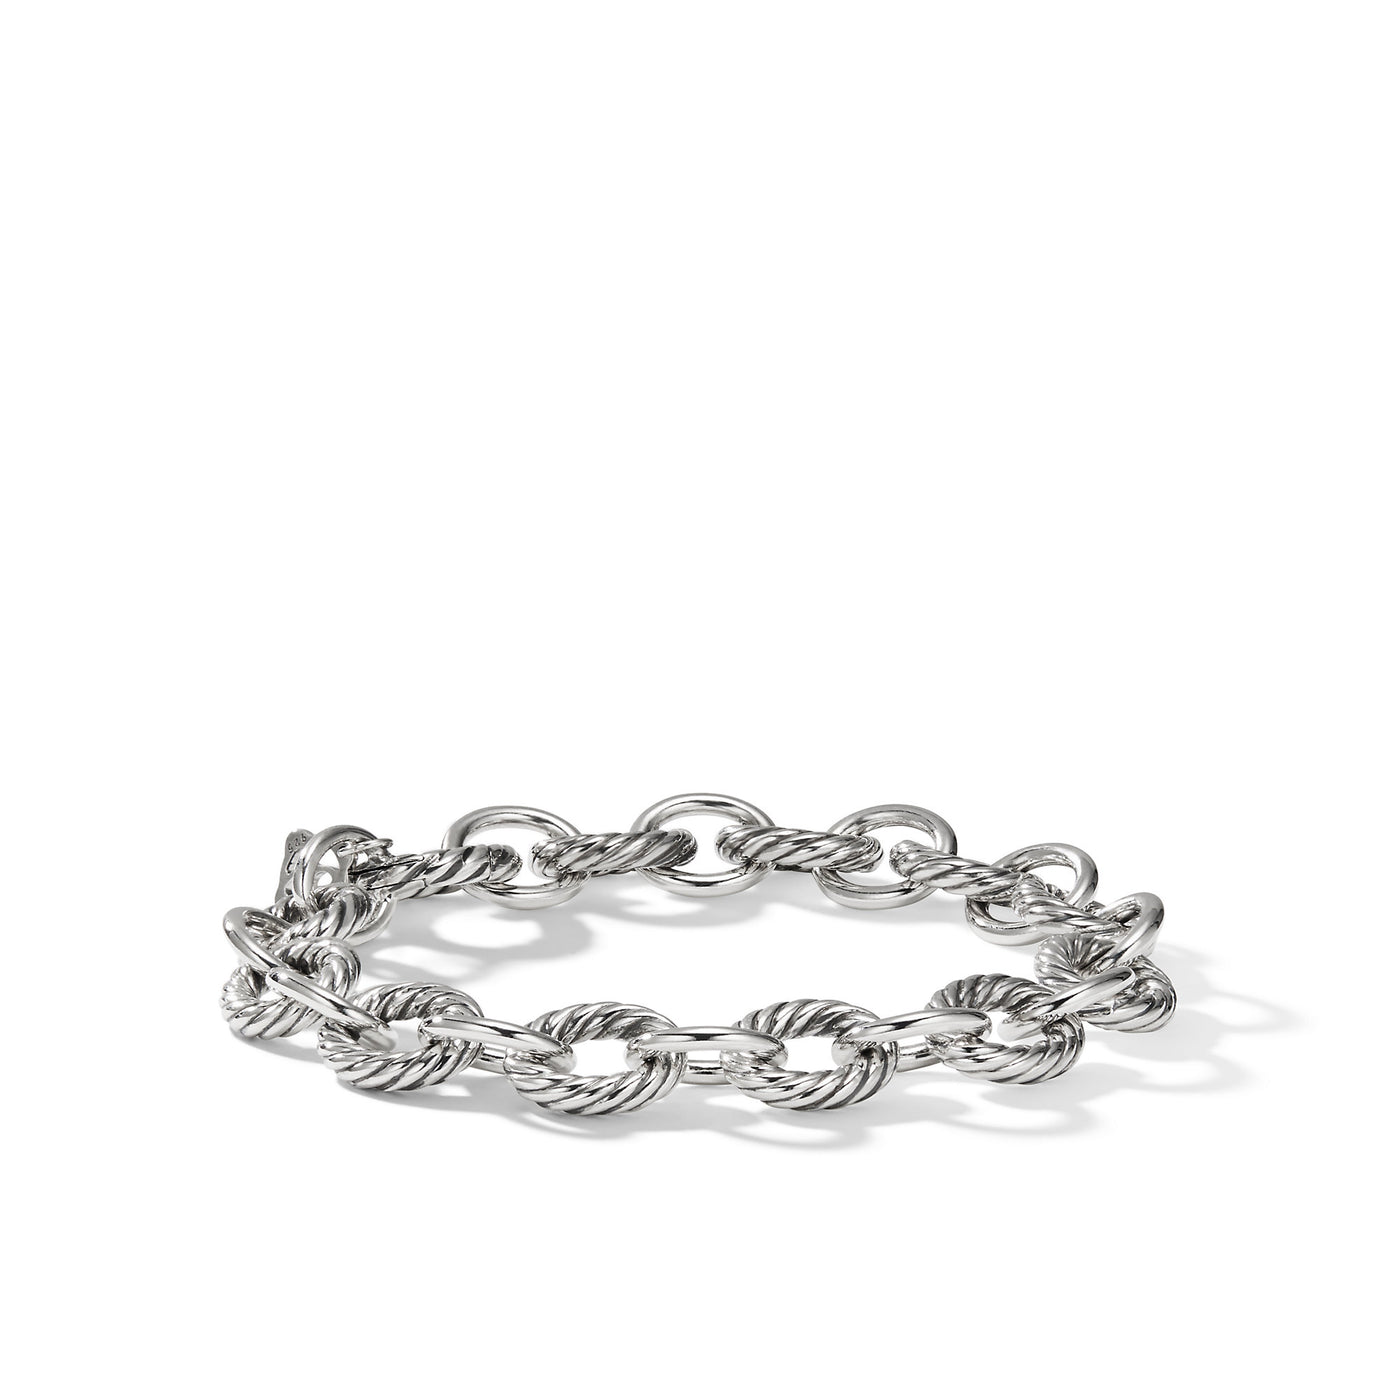 Oval Link Chain Bracelet in Sterling Silver\, 10mm